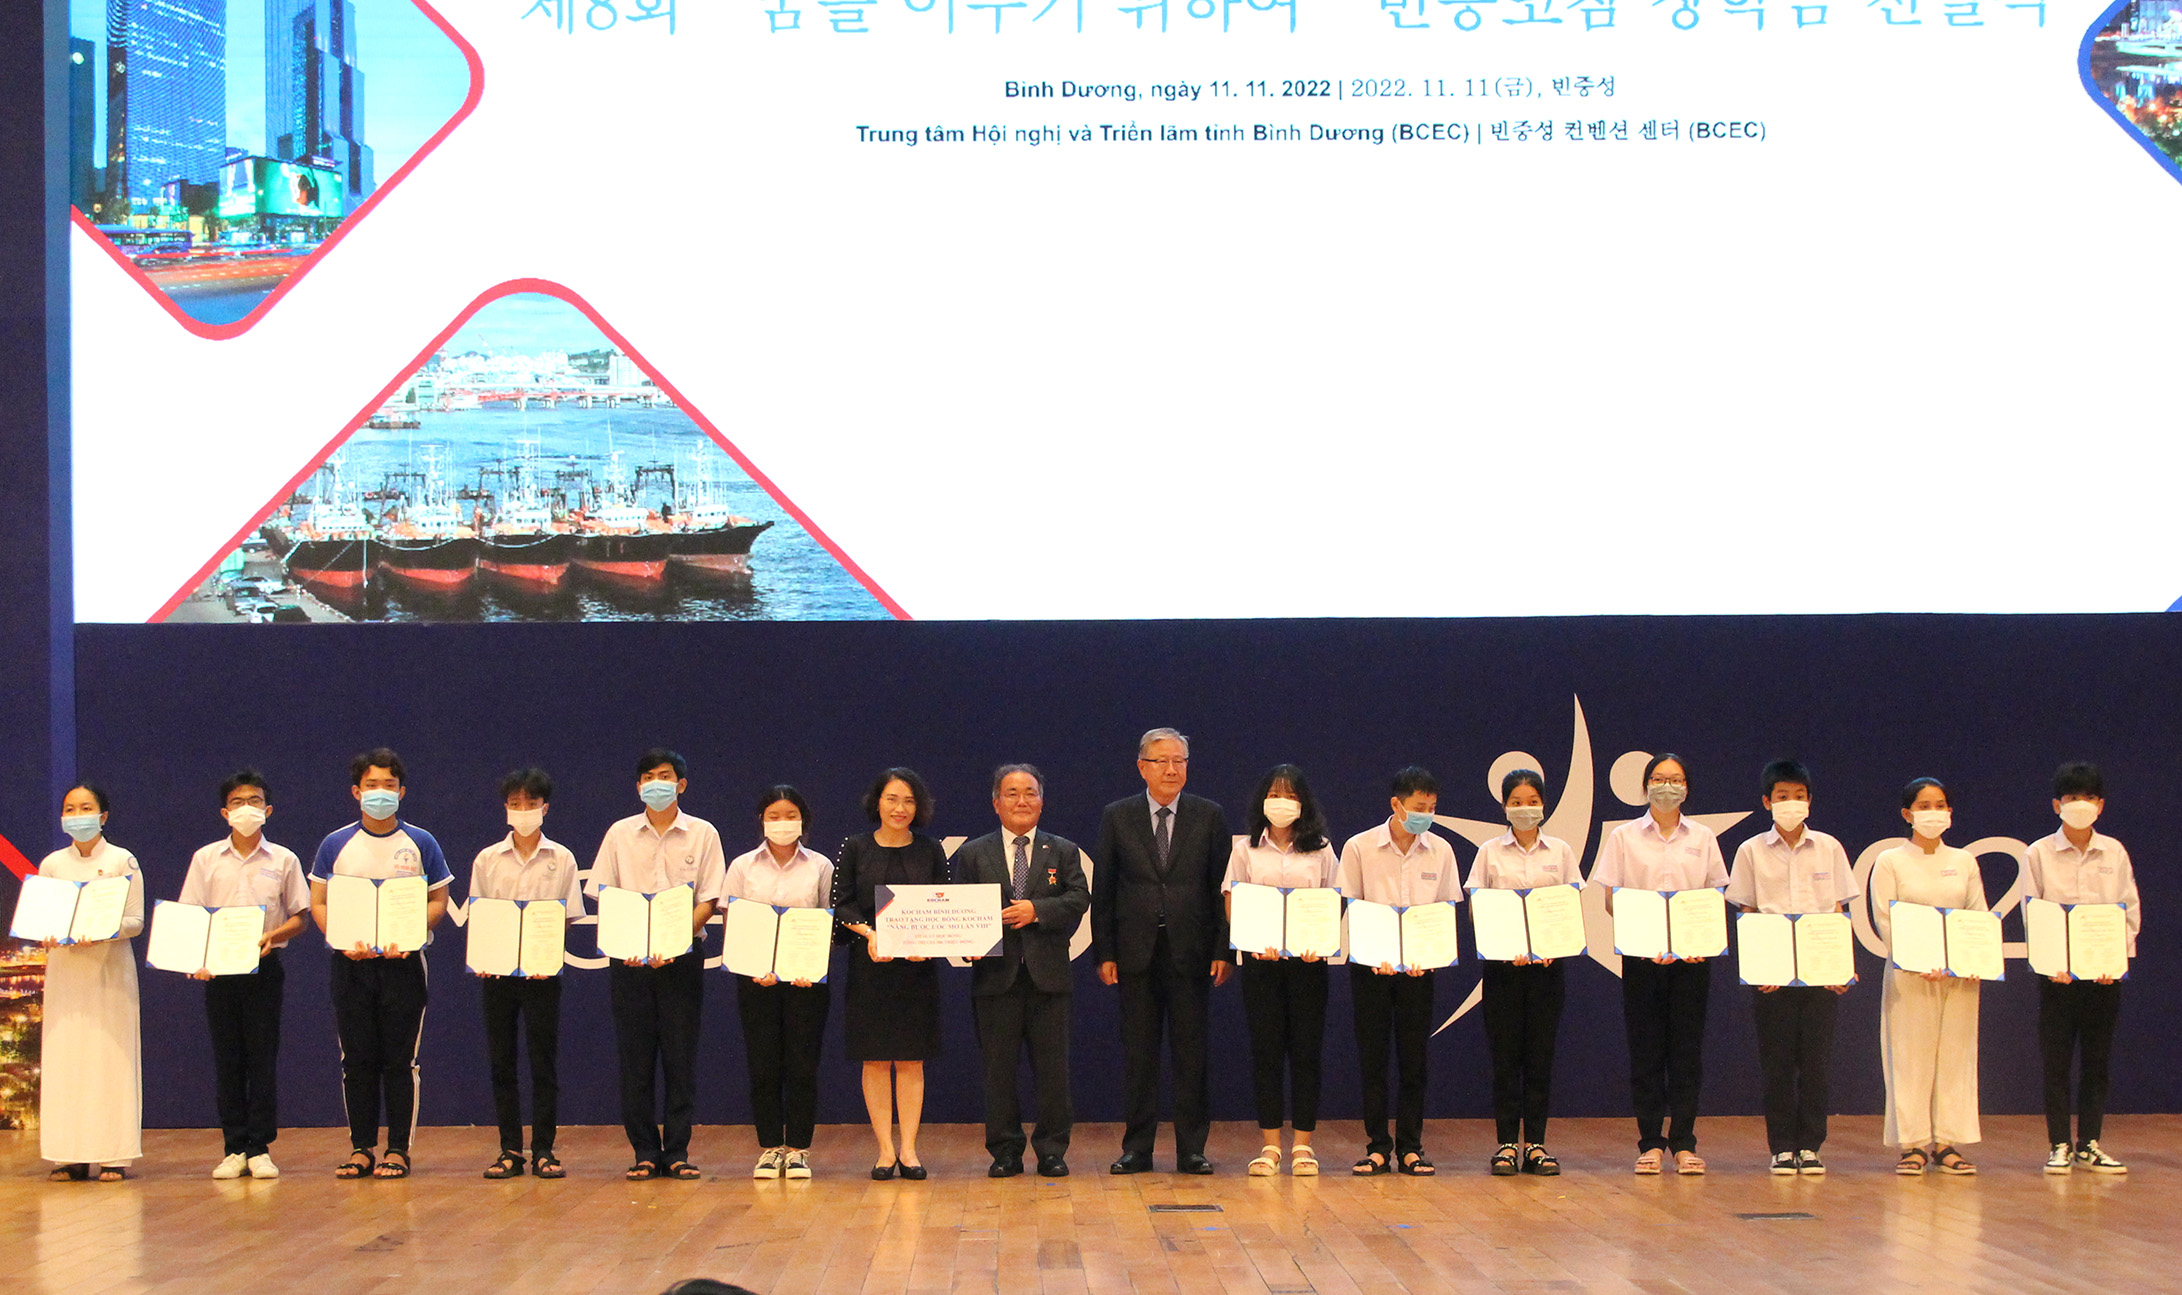 Chương trình “Học bổng Kocham Nâng bước ước mơ lần VIII”: Chi hội Doanh nghiệp Đầu tư Hàn Quốc cũng đã trao tặng 152 suất học bổng cho học sinh nghèo học giỏi trên địa bàn tỉnh Bình Dương (Ảnh: HH)